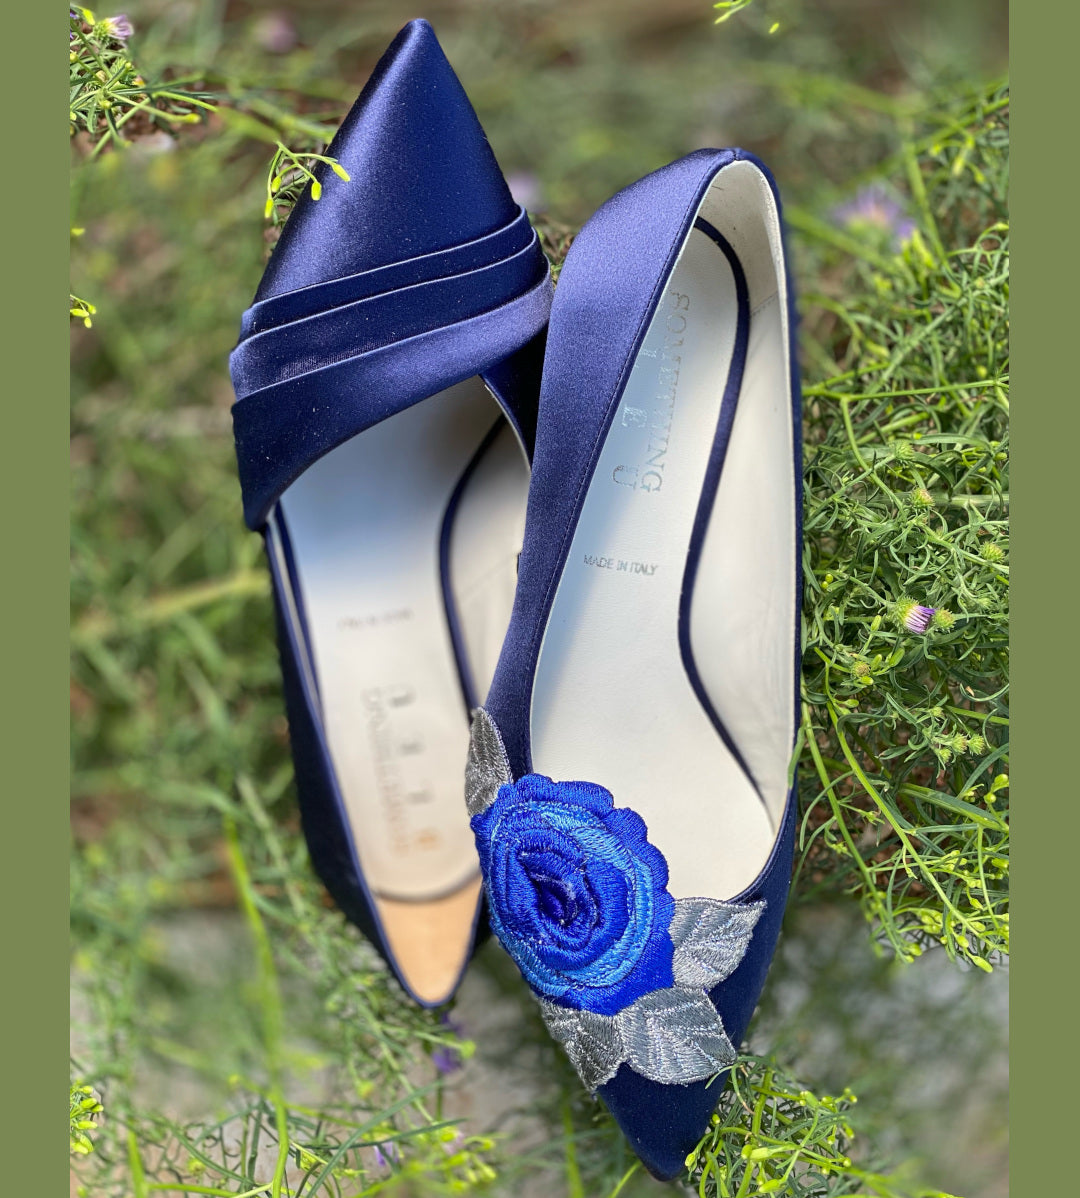 Something Old, Something New–Something Blue on Your Shoe